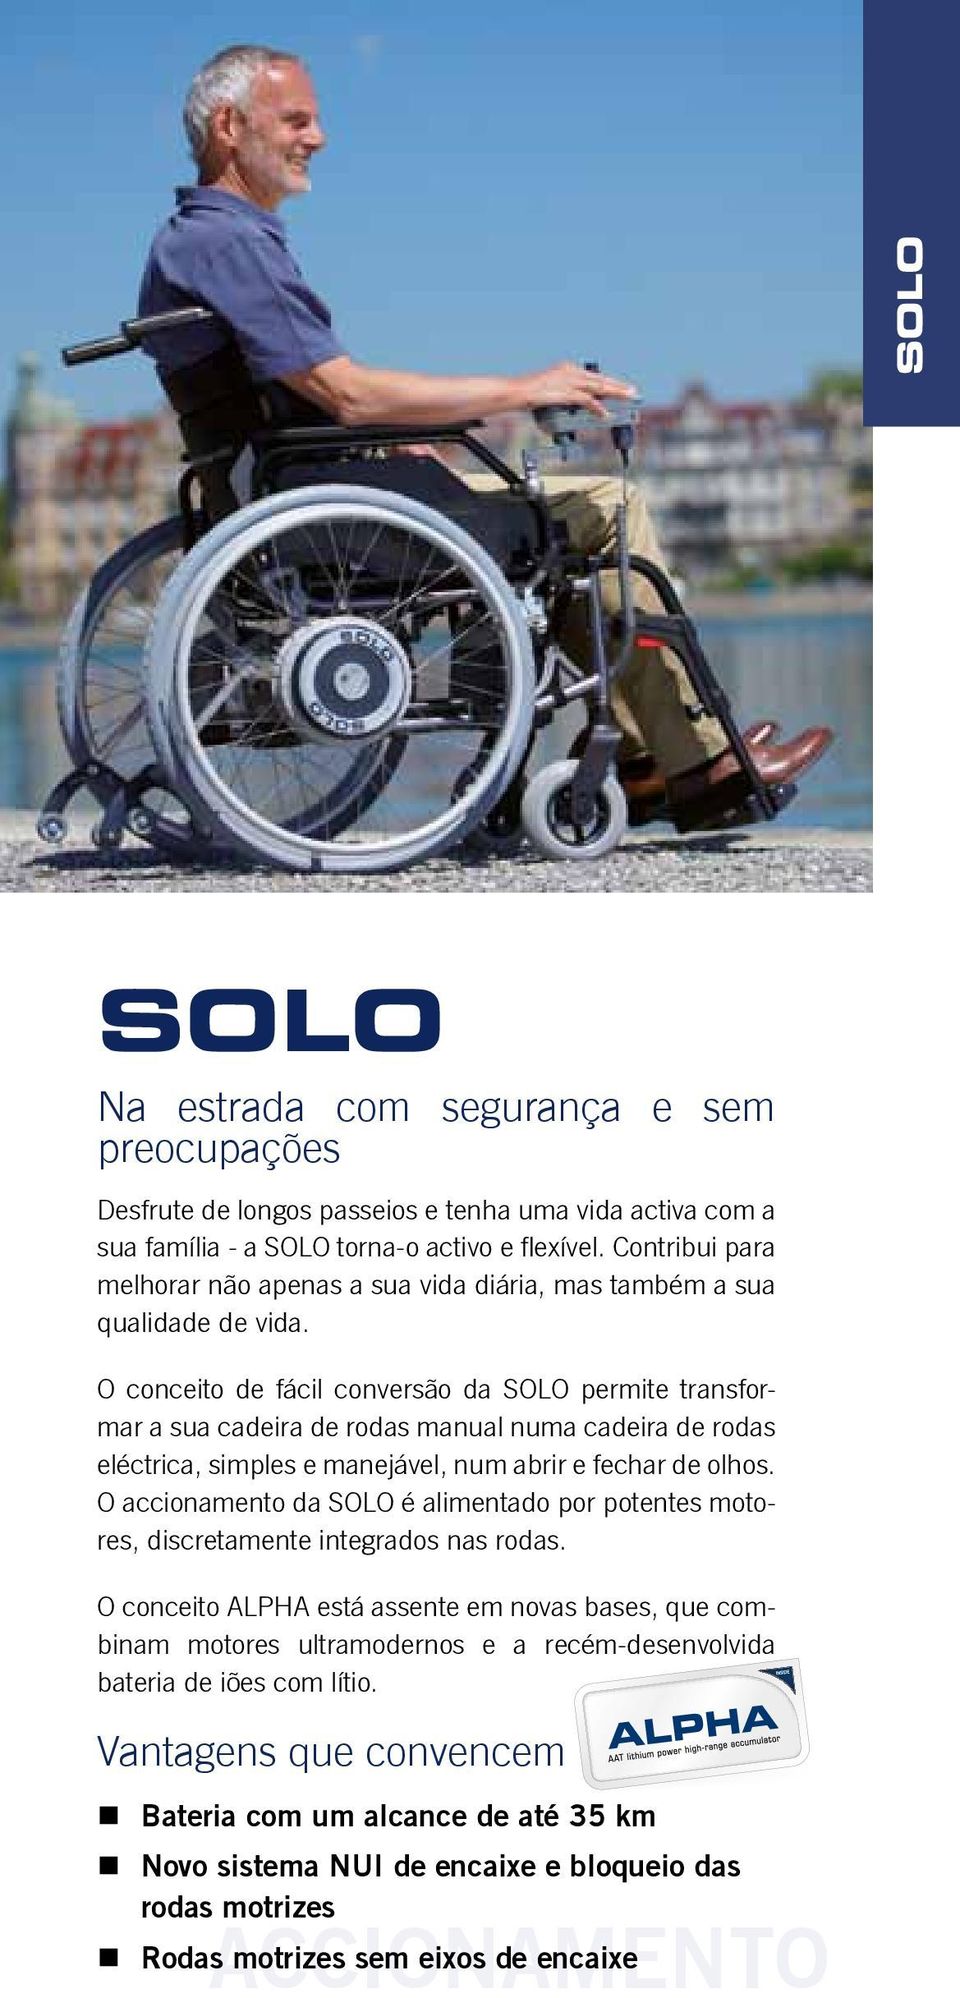 O conceito de fácil conversão da SOLO permite transformar a sua cadeira de rodas manual numa cadeira de rodas eléctrica, simples e manejável, num abrir e fechar de olhos.